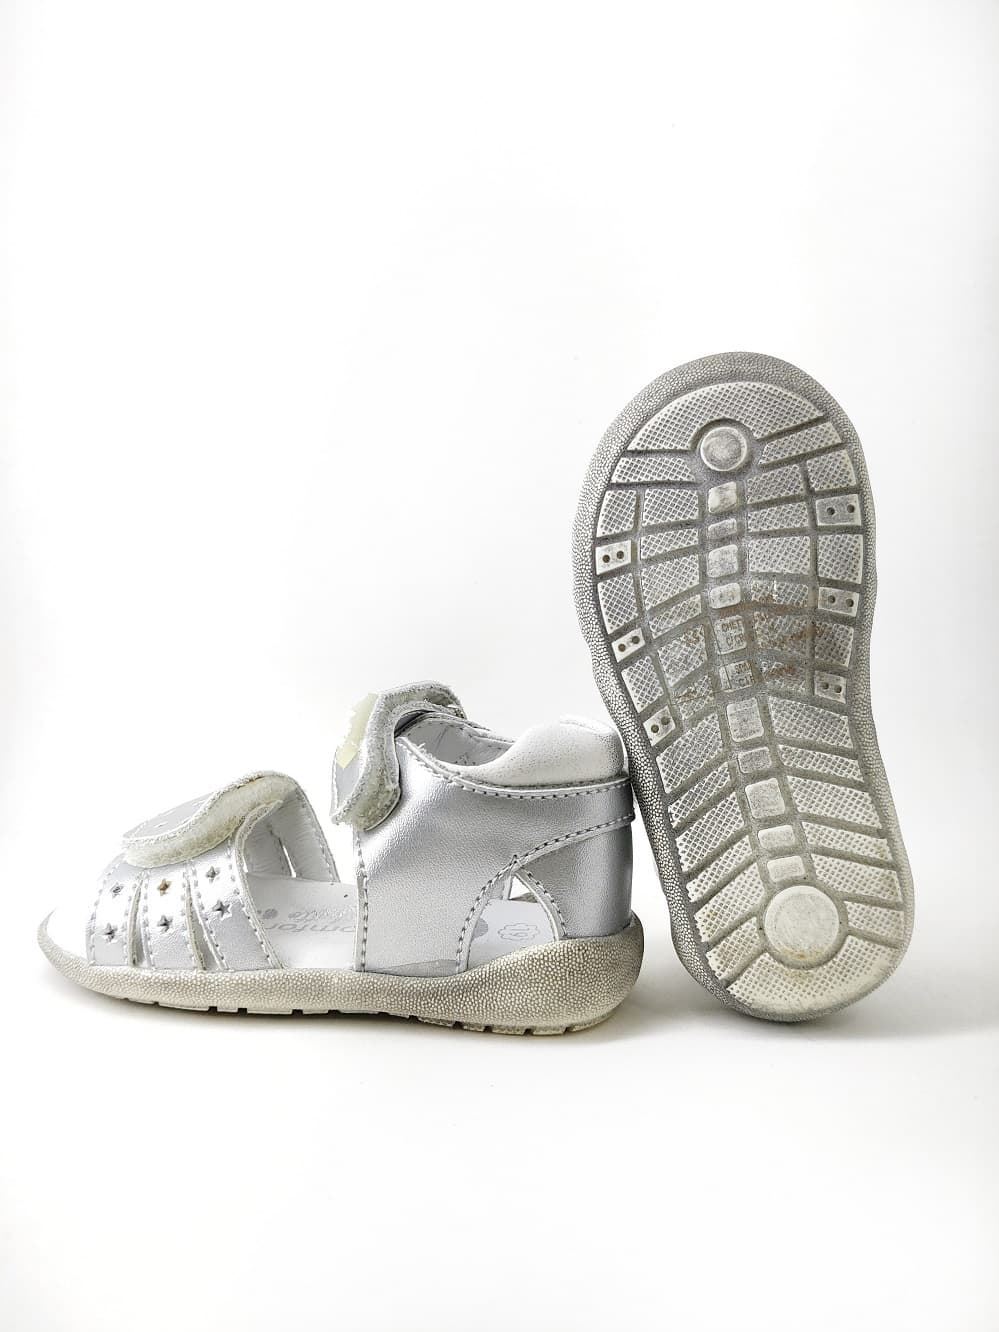 Sandalias Plata para bebé niña con velcro - Imagen 4